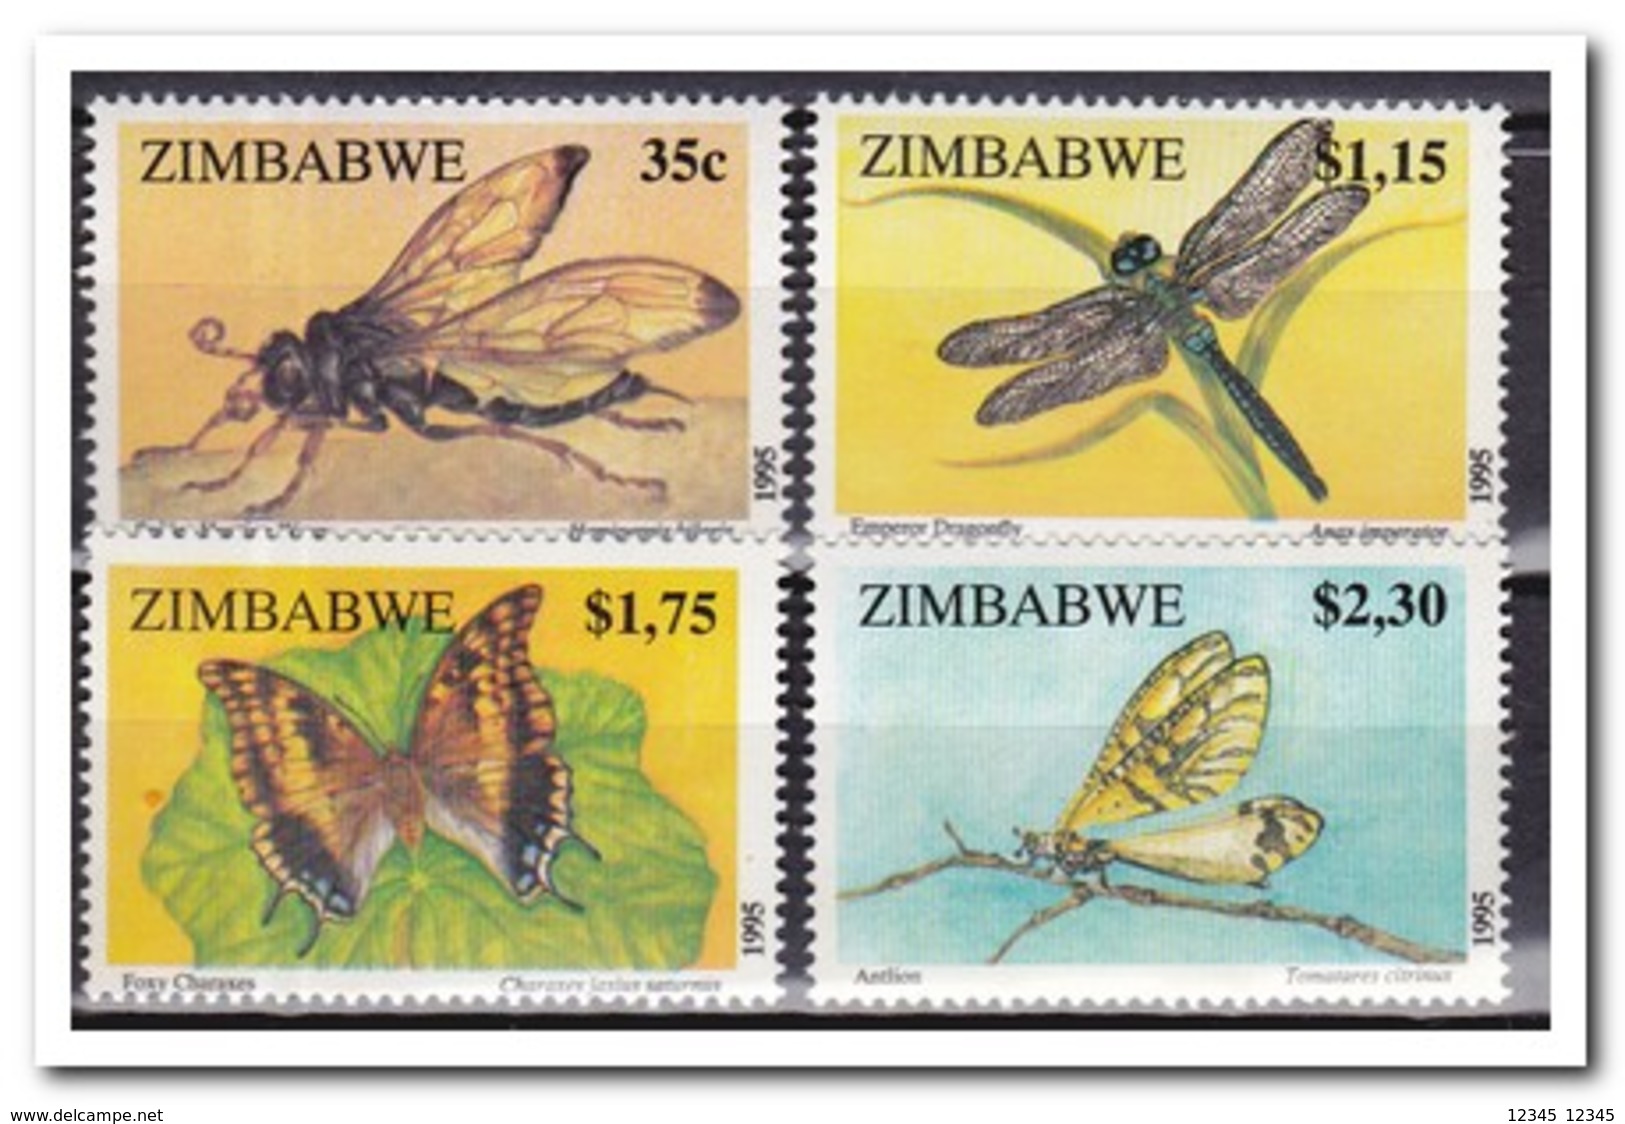 Zimbabwe 1994, Postfris MNH, Insects, Butterflies - Zimbabwe (1980-...)